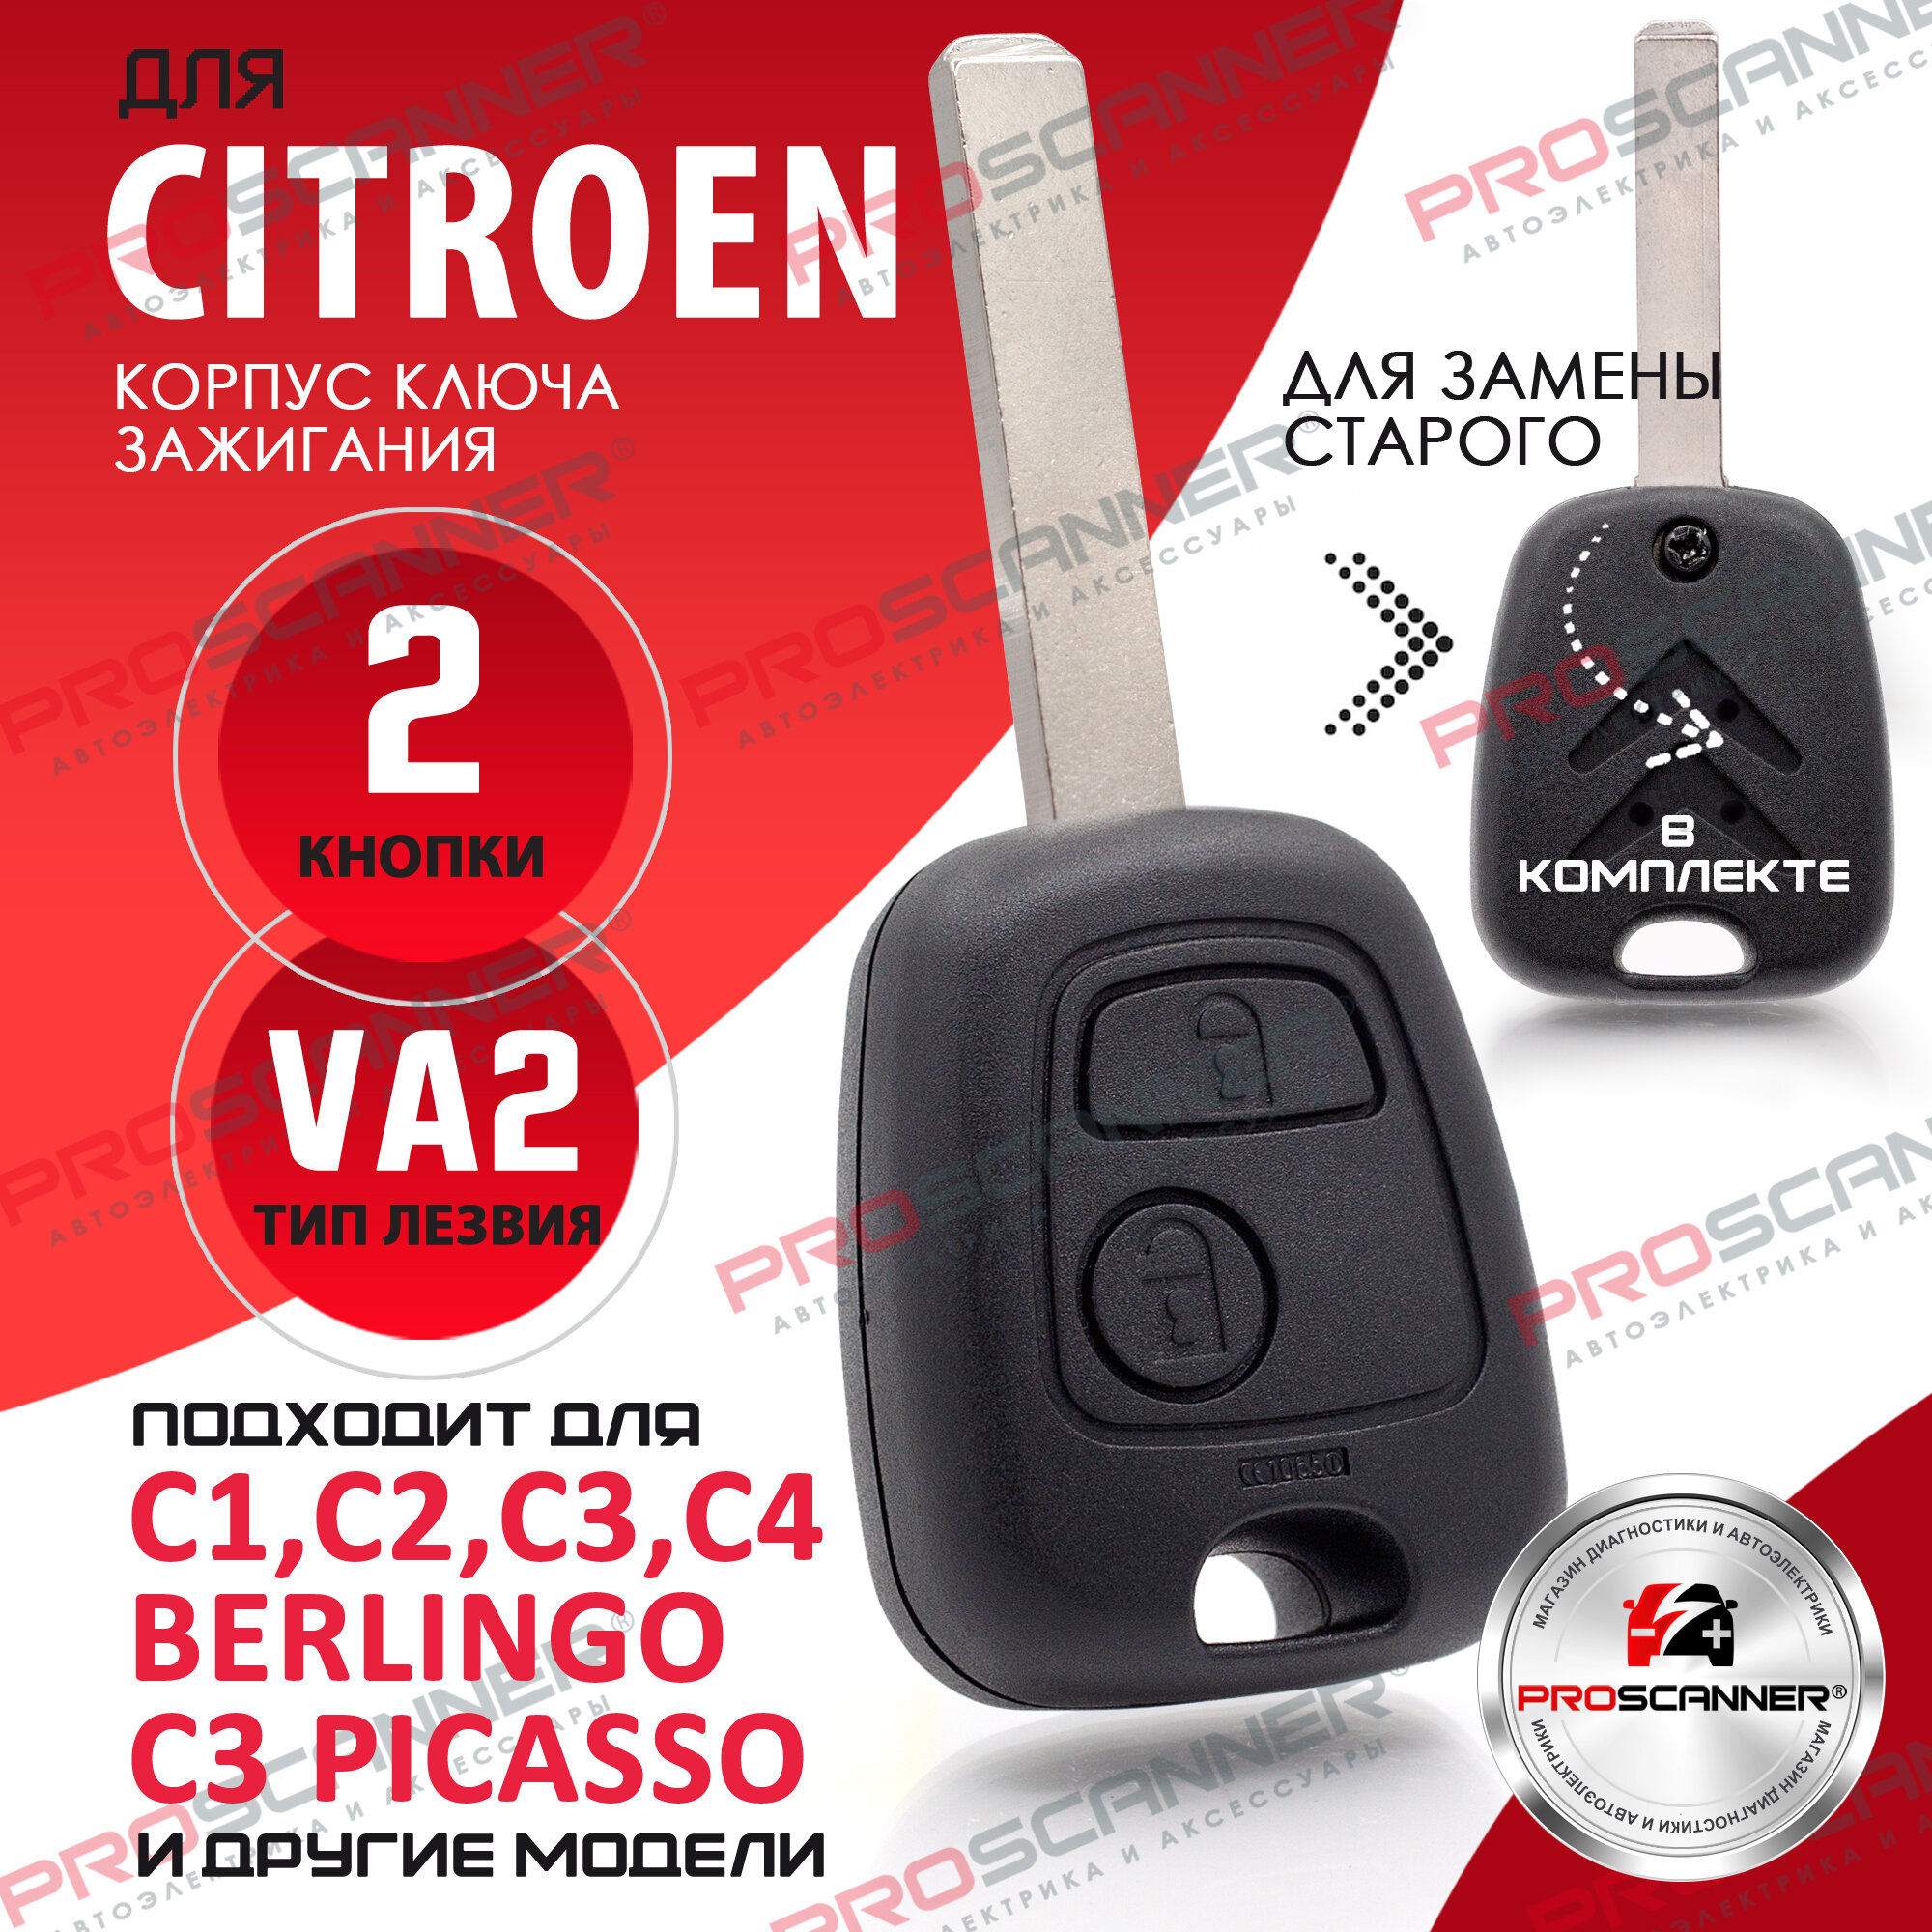 Корпус ключа зажигания для Citroen Ситроен C1 C2 C3 C4 Saxo Picasso Xsara Berlingo - 1 штука (2х кнопочный ключ, лезвие VA2)